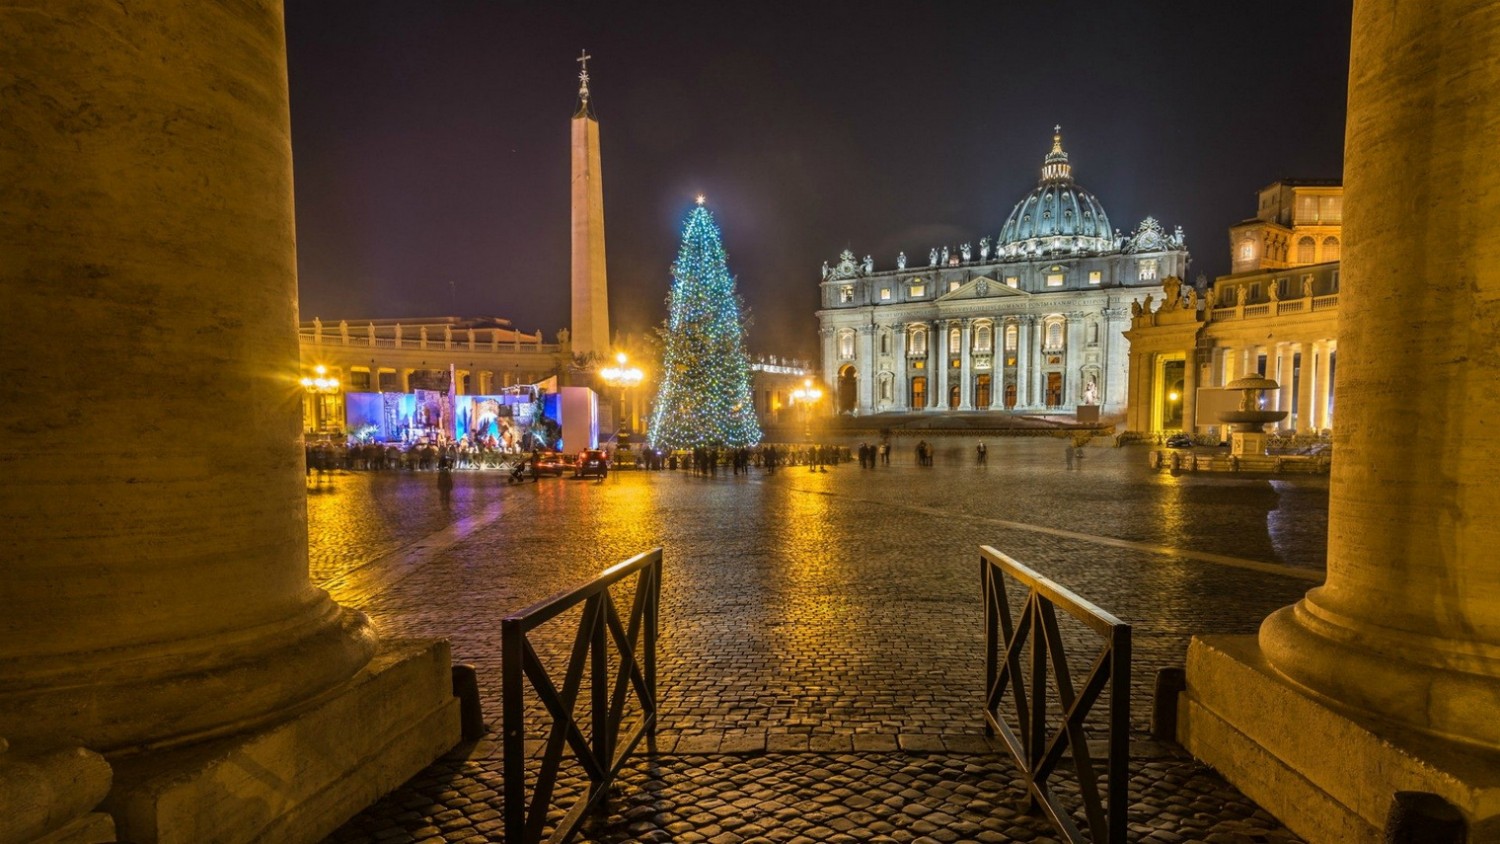 Hình ảnh - Cảnh Giáng Sinh và cây Noël tại Quảng trường Thánh Phêrô năm 2021